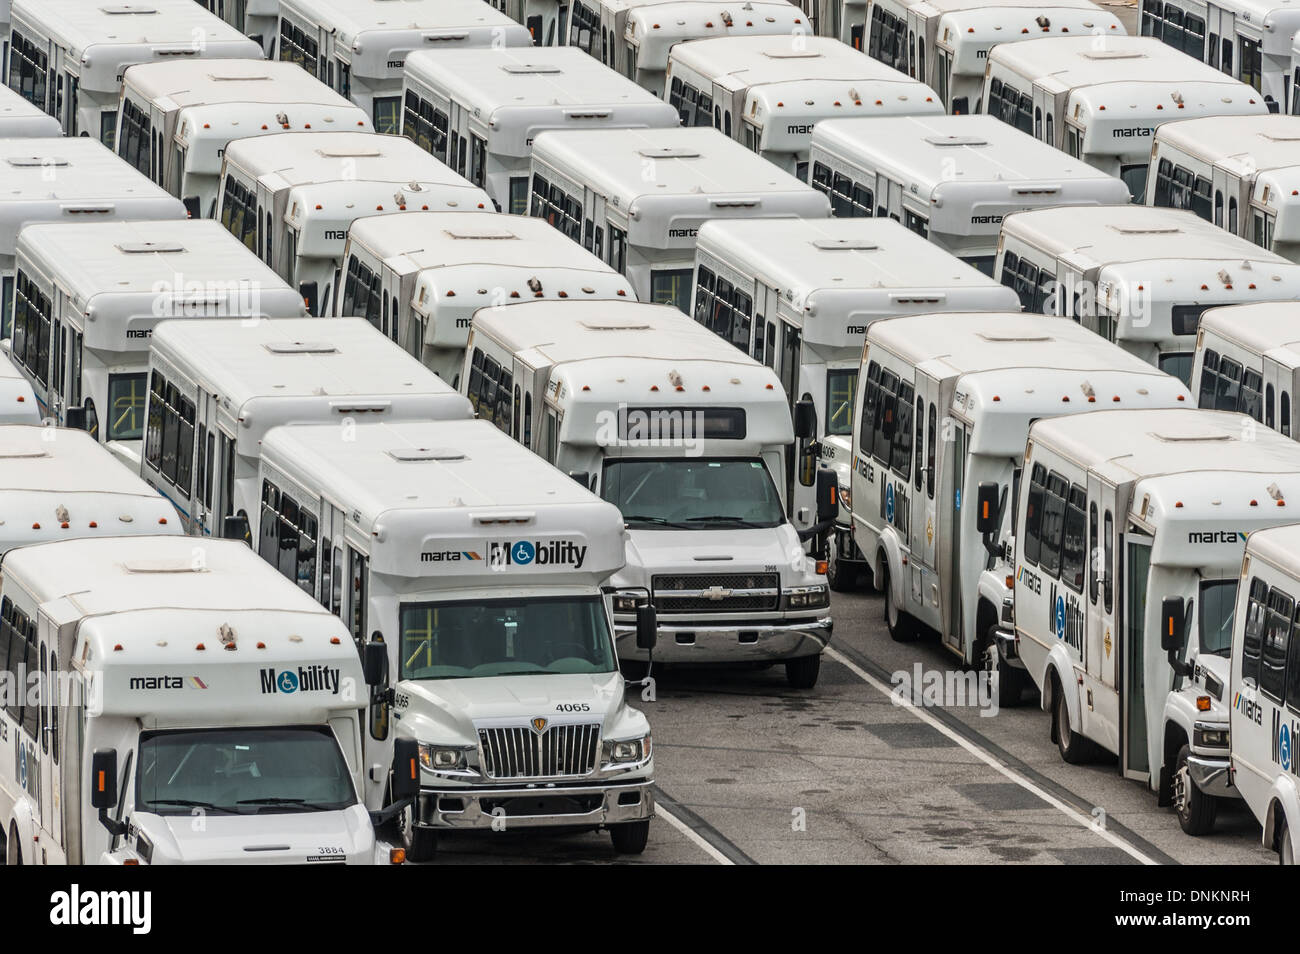 Flota de MARTA (Metropolitan Atlanta Rapid Transit Authority) Movilidad autobuses que sirven a las personas con discapacidad. Foto de stock